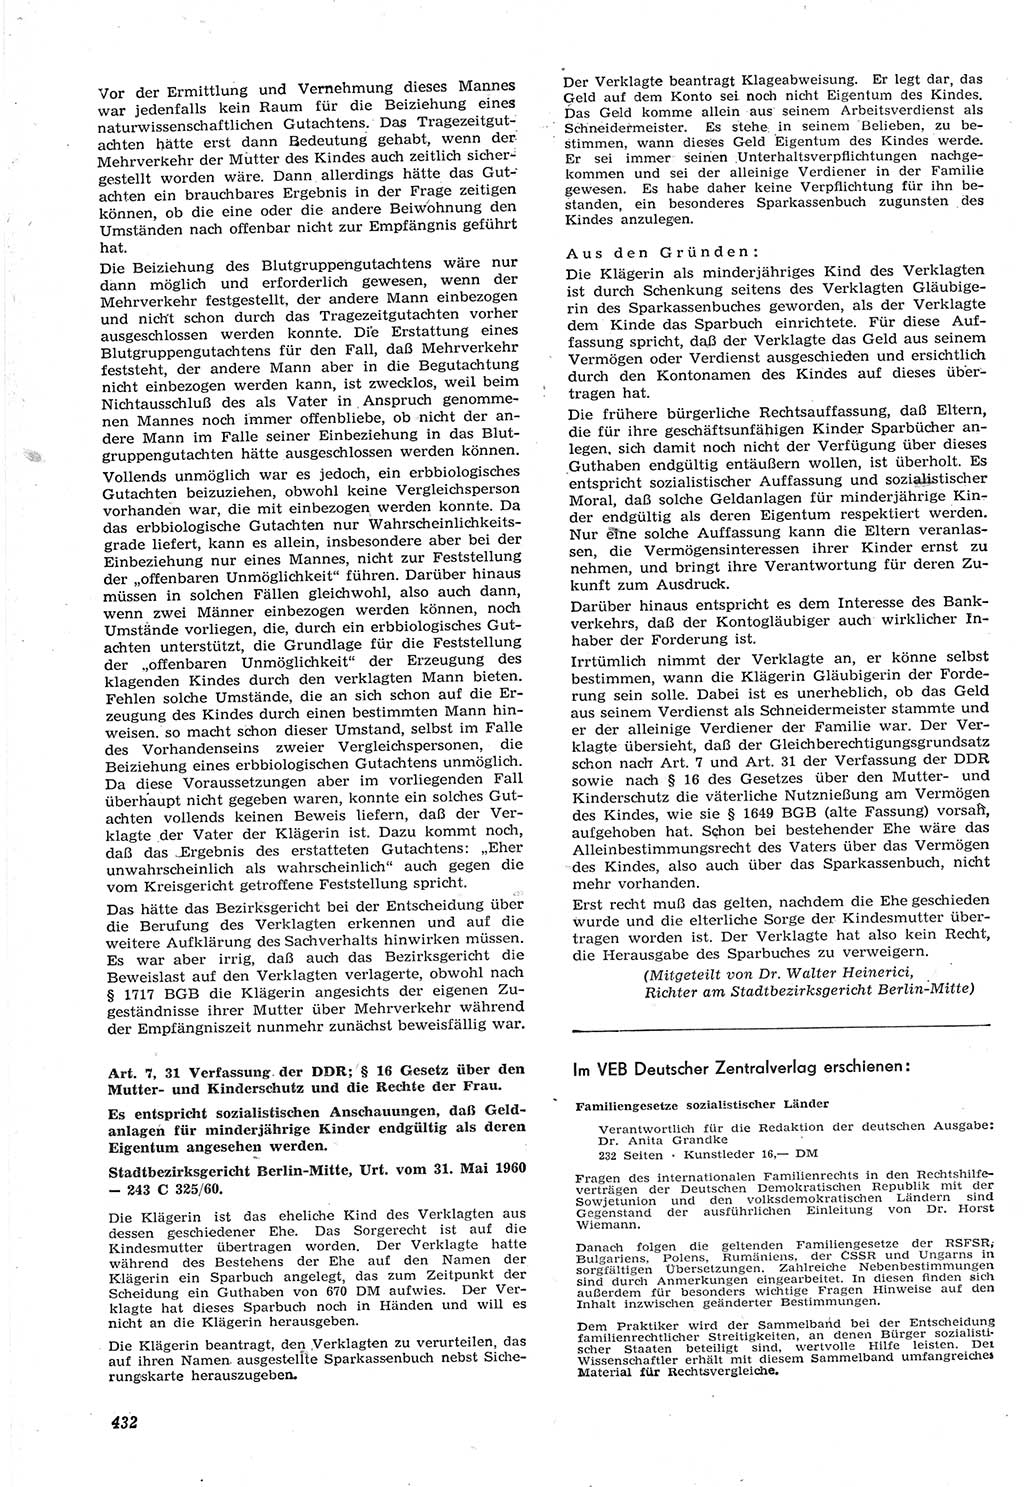 Neue Justiz (NJ), Zeitschrift für Recht und Rechtswissenschaft [Deutsche Demokratische Republik (DDR)], 15. Jahrgang 1961, Seite 432 (NJ DDR 1961, S. 432)